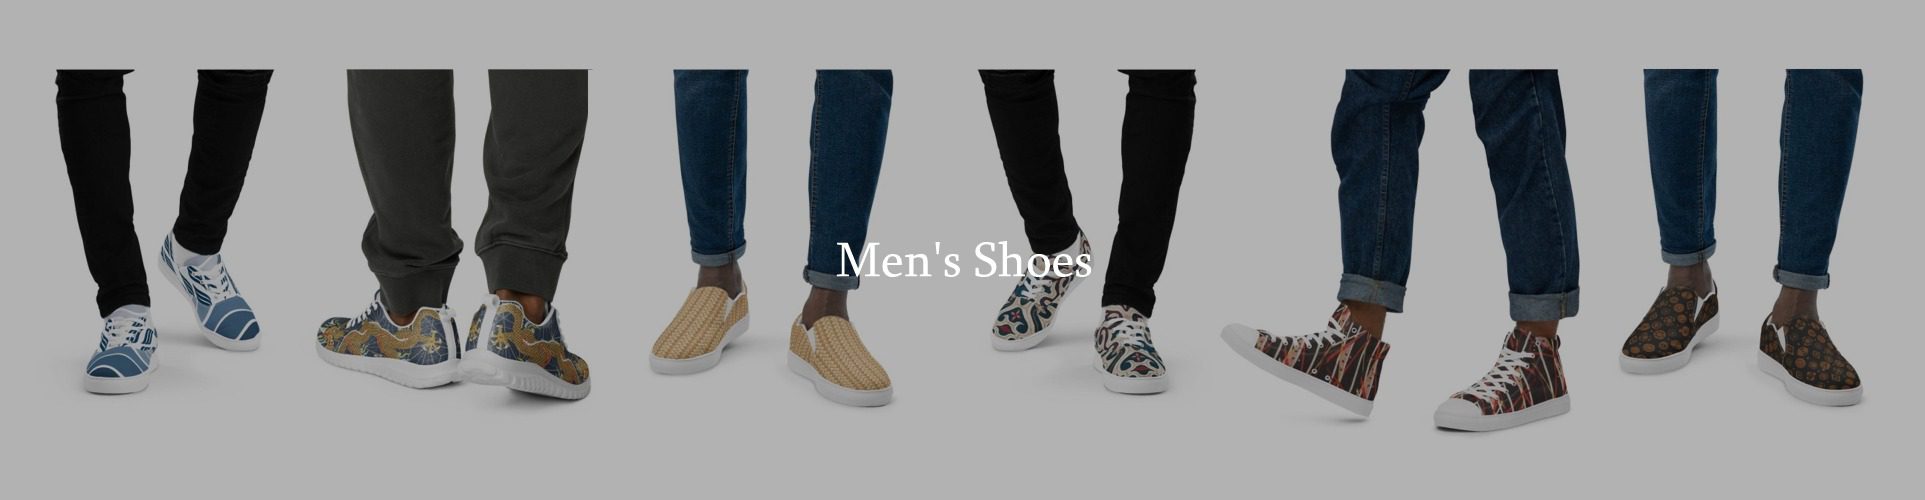 Mens shoes